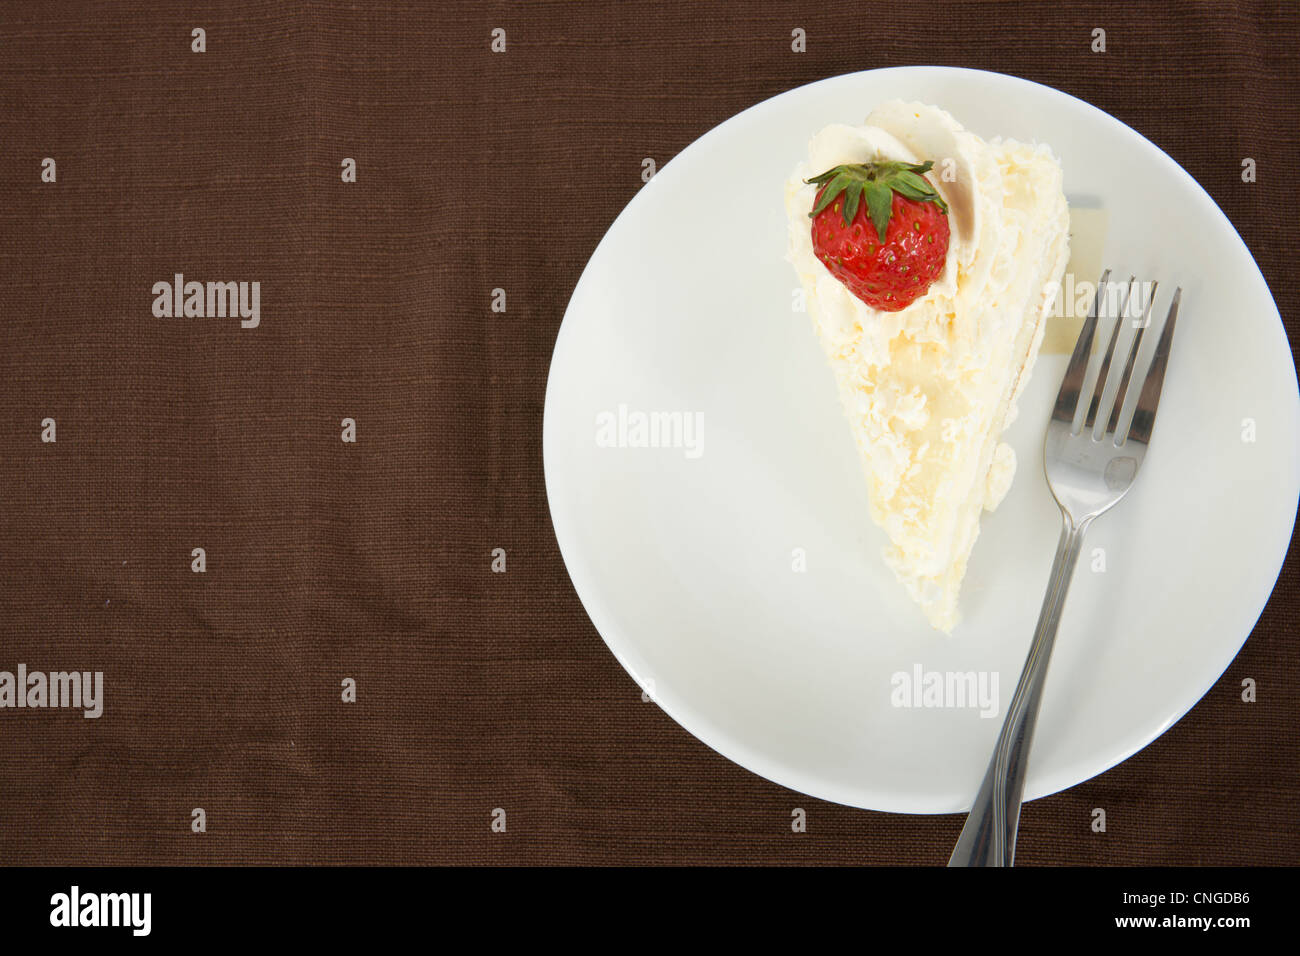 Délicieux gâteau vanille fraise avec décorer sur le dessus, sur marron tapis de table, vue du dessus Banque D'Images